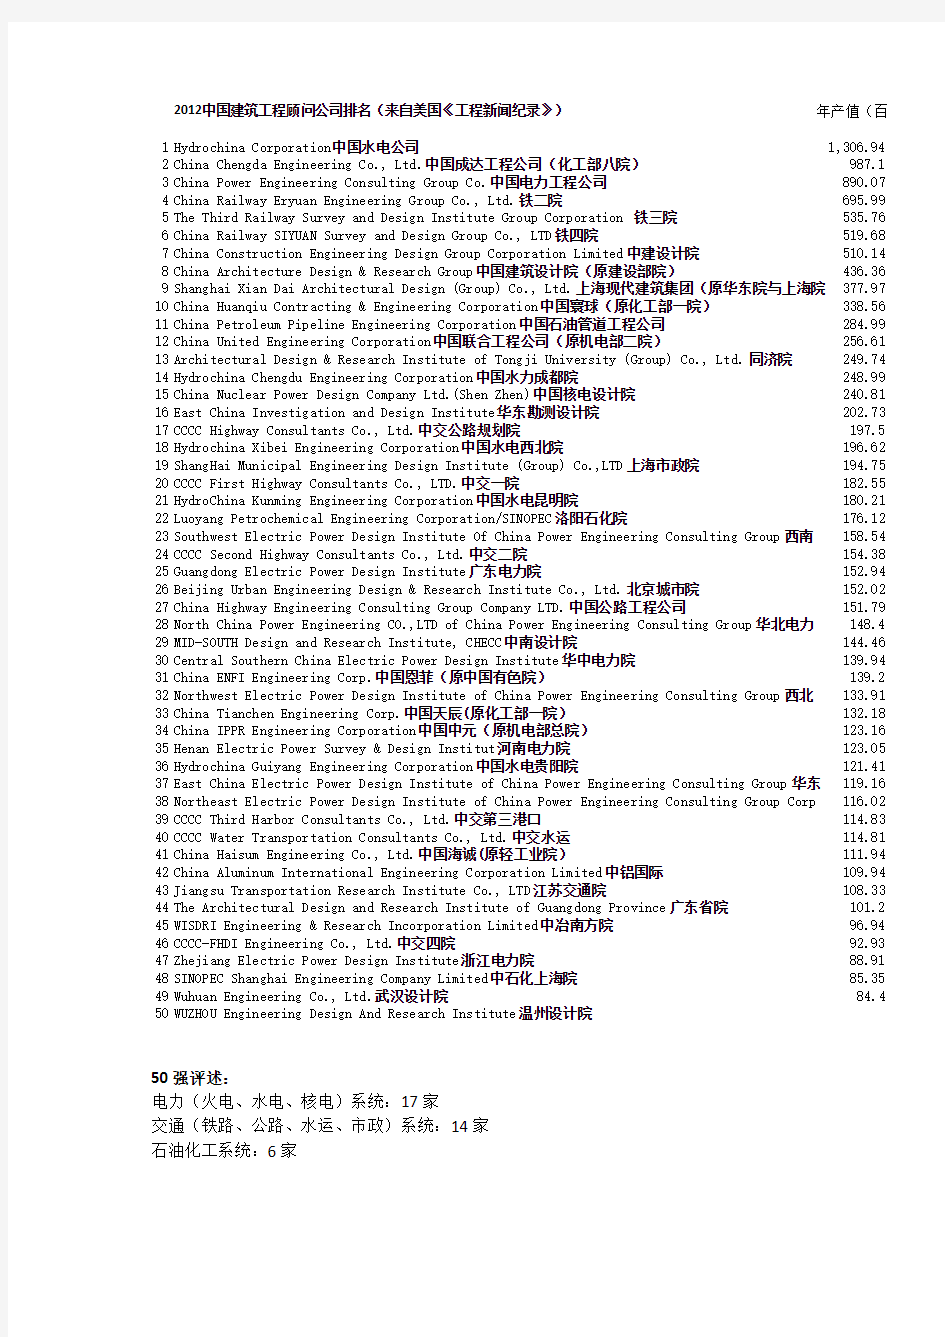 2012中国建筑工程顾问公司排名